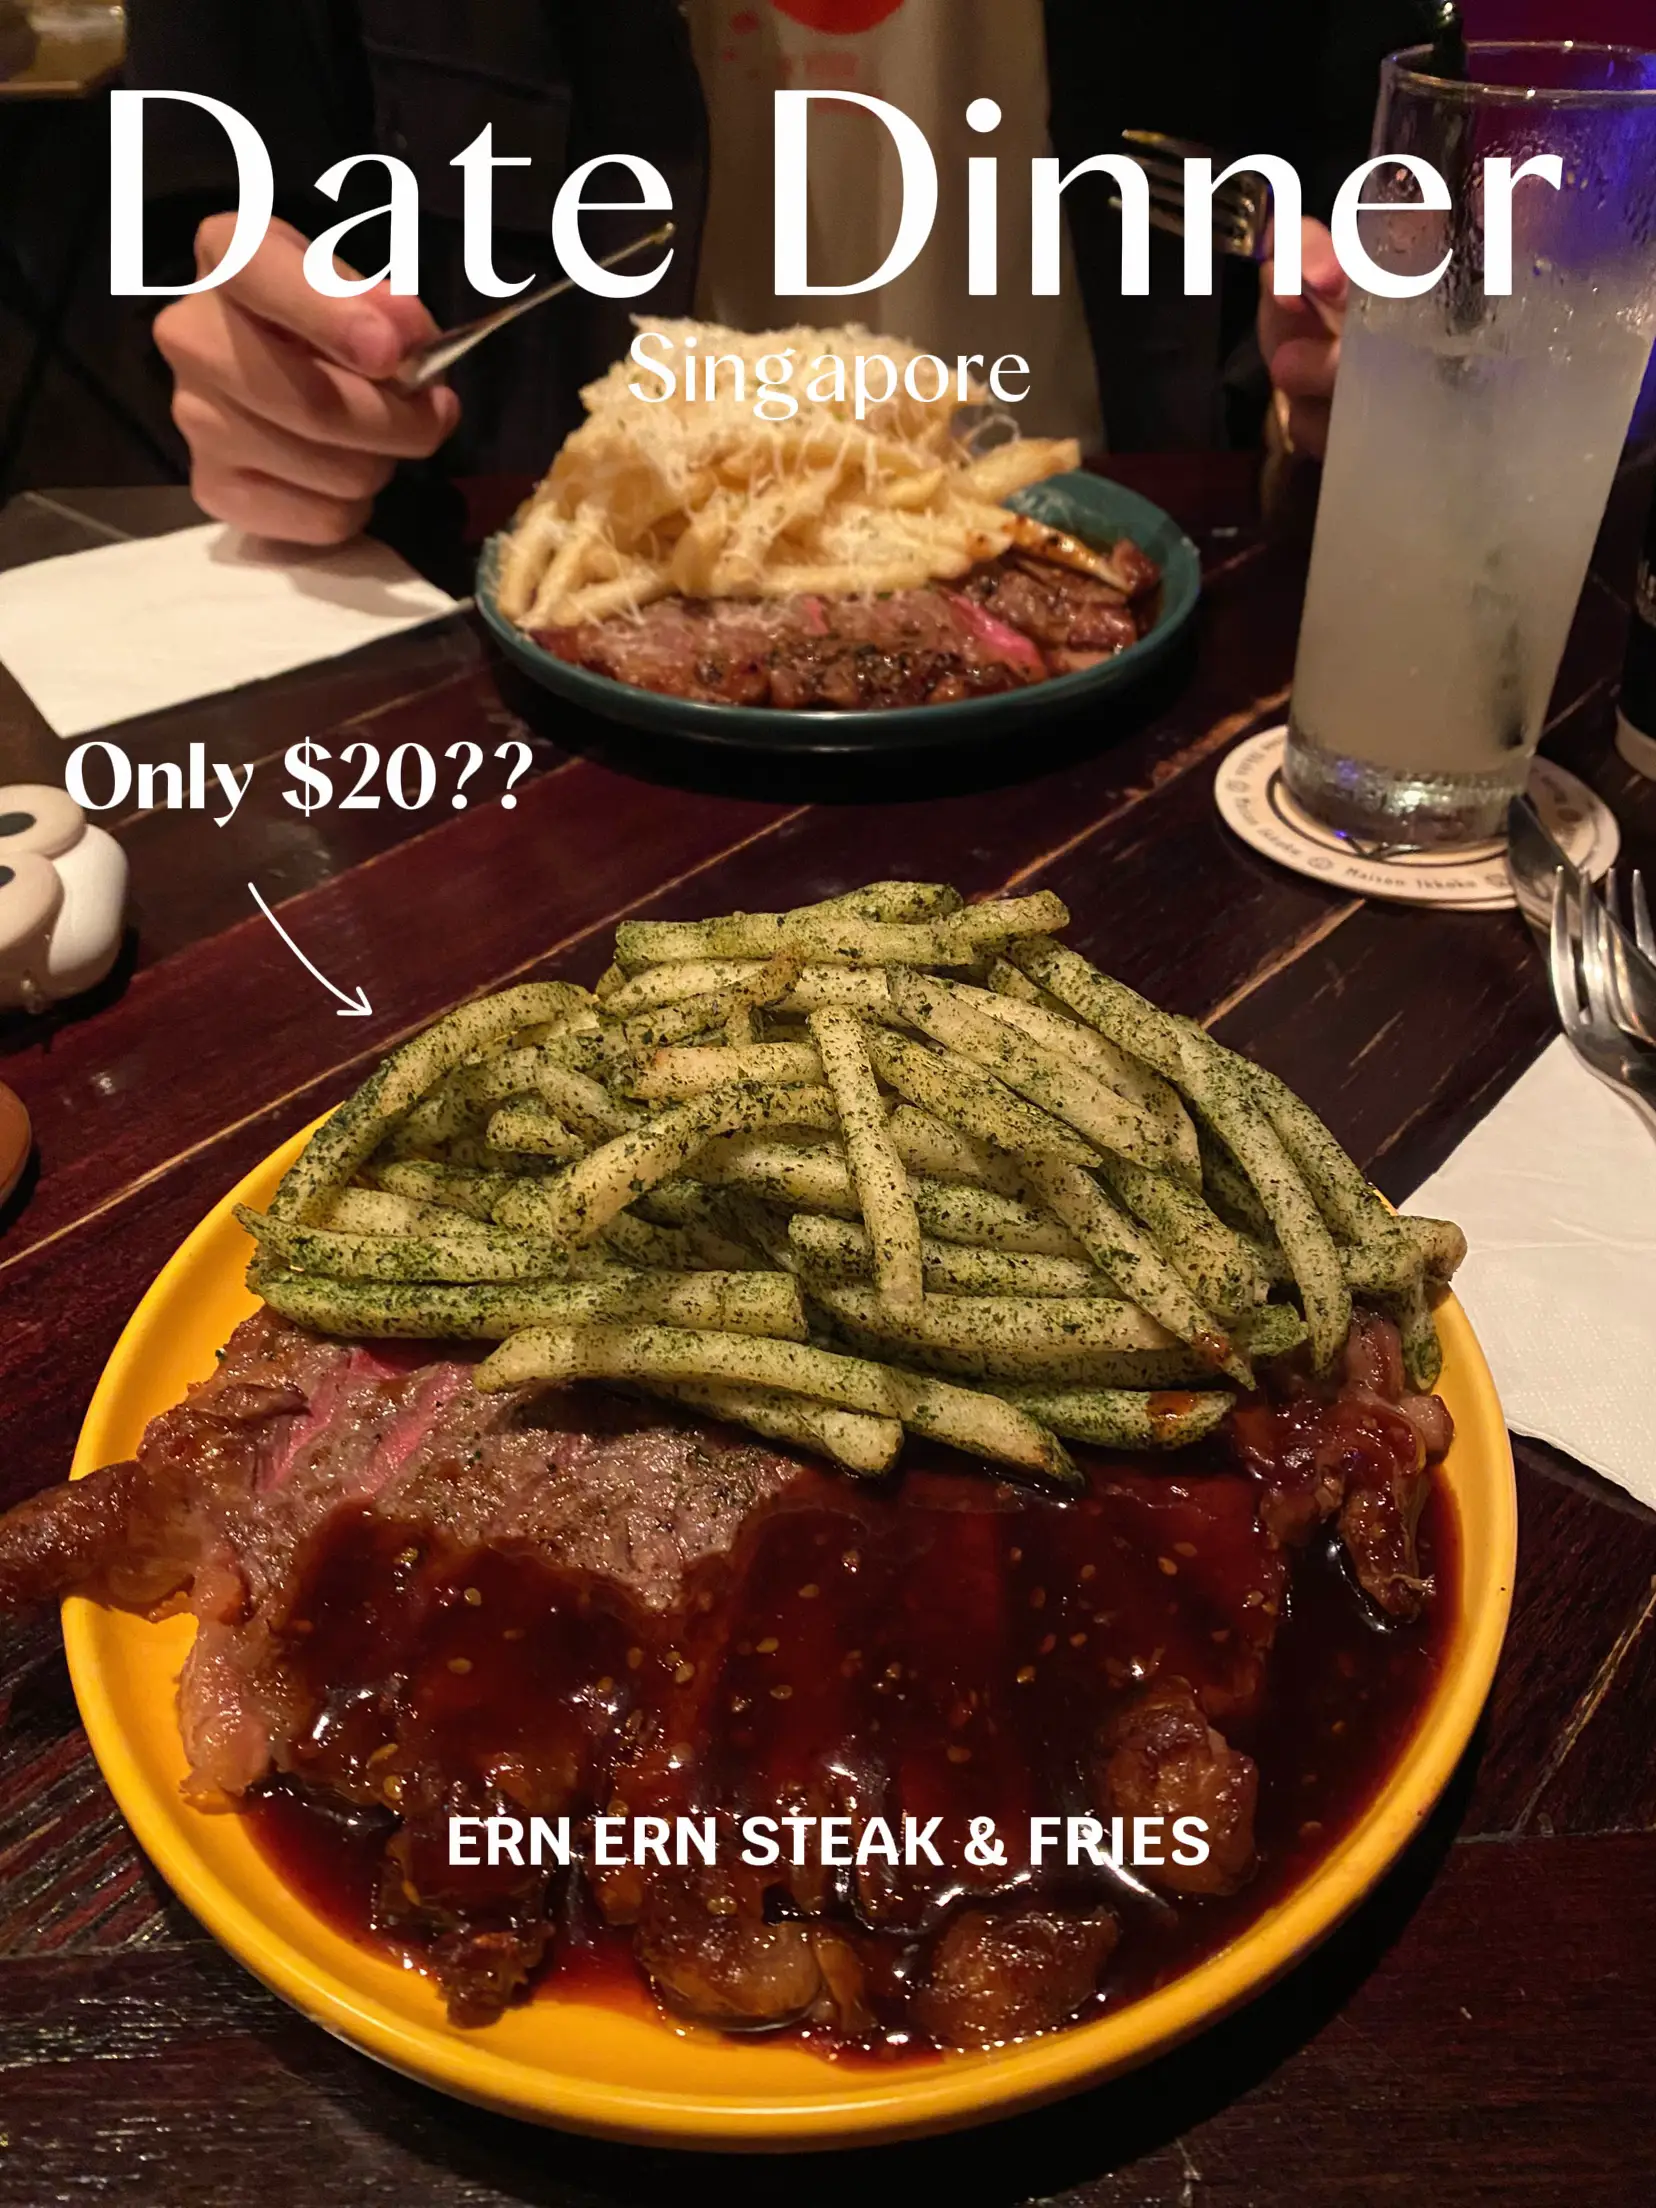 hidden gem SG: affordable STEAK for dinner date 🫶's images(0)